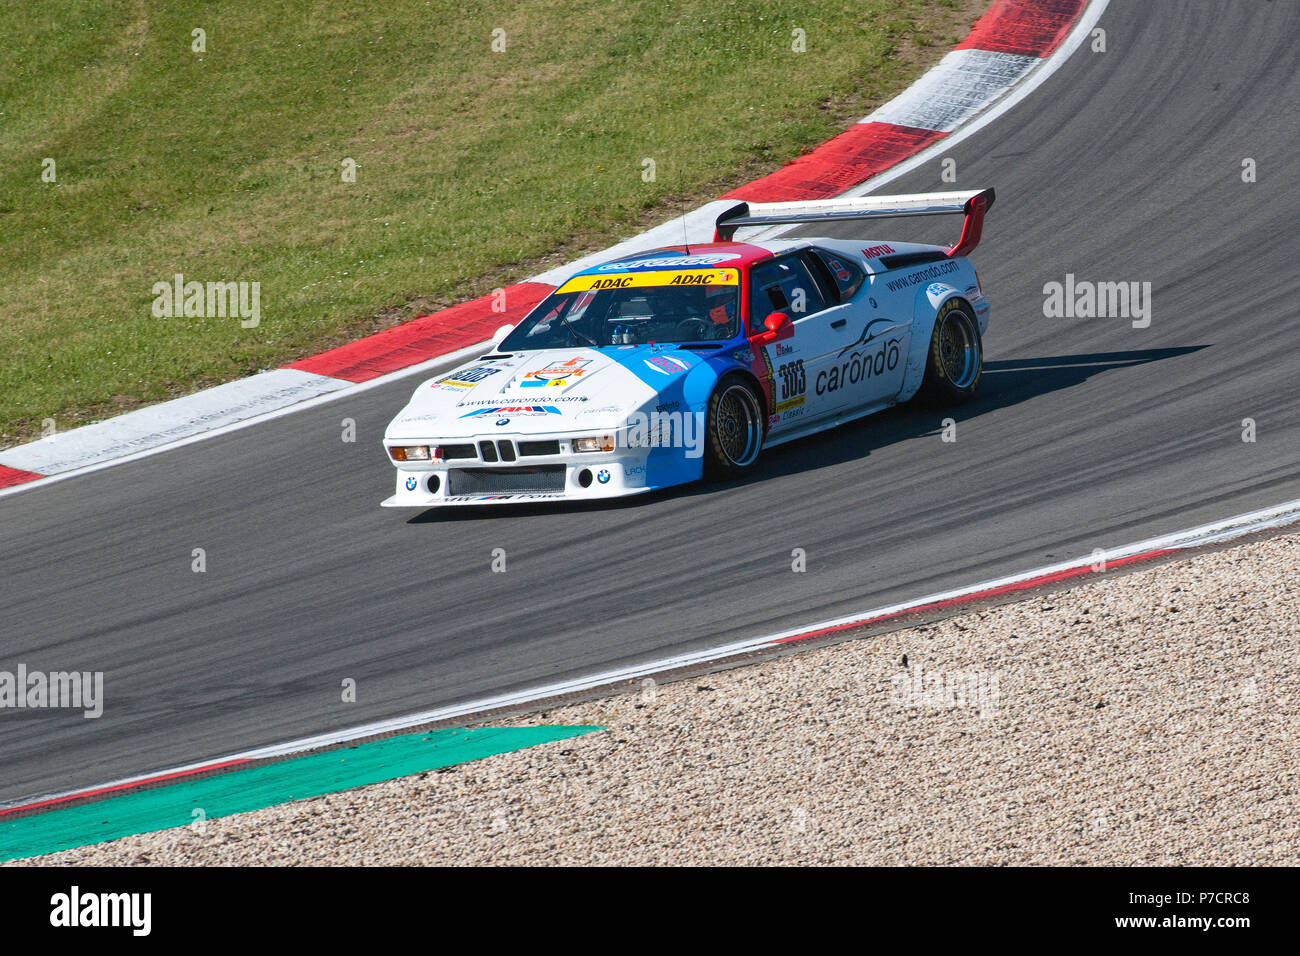 BMW M1, Nuerburgring, 24h Classic, motorsports, Eifel, Rhineland-Palatinate, Germany, Europe Stock Photo